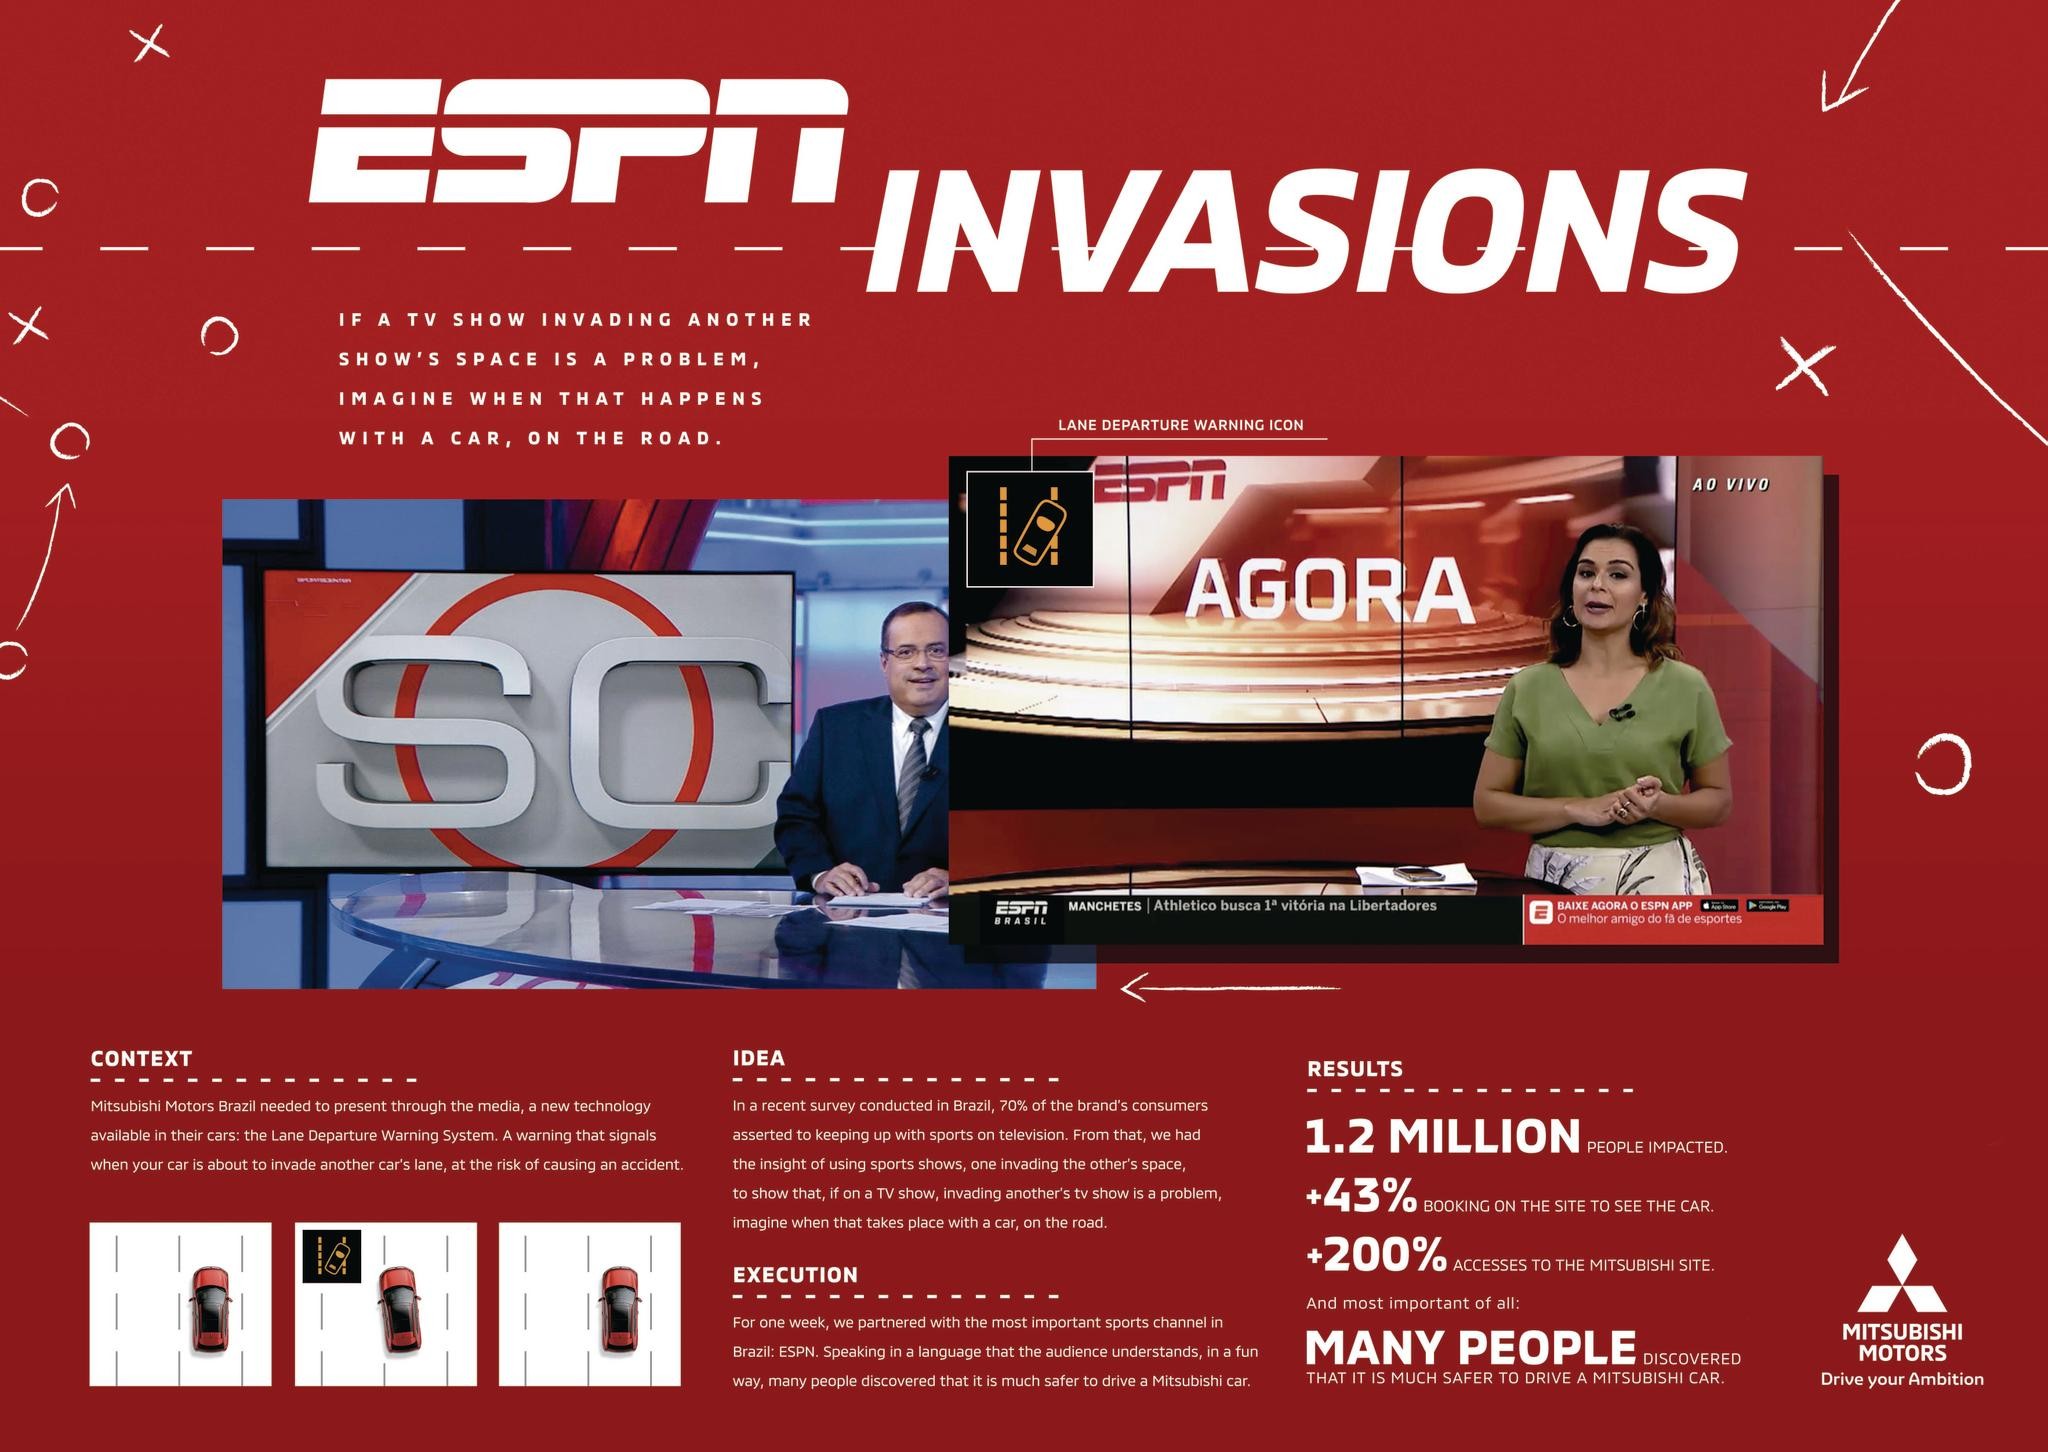 ESPN INVASIONS